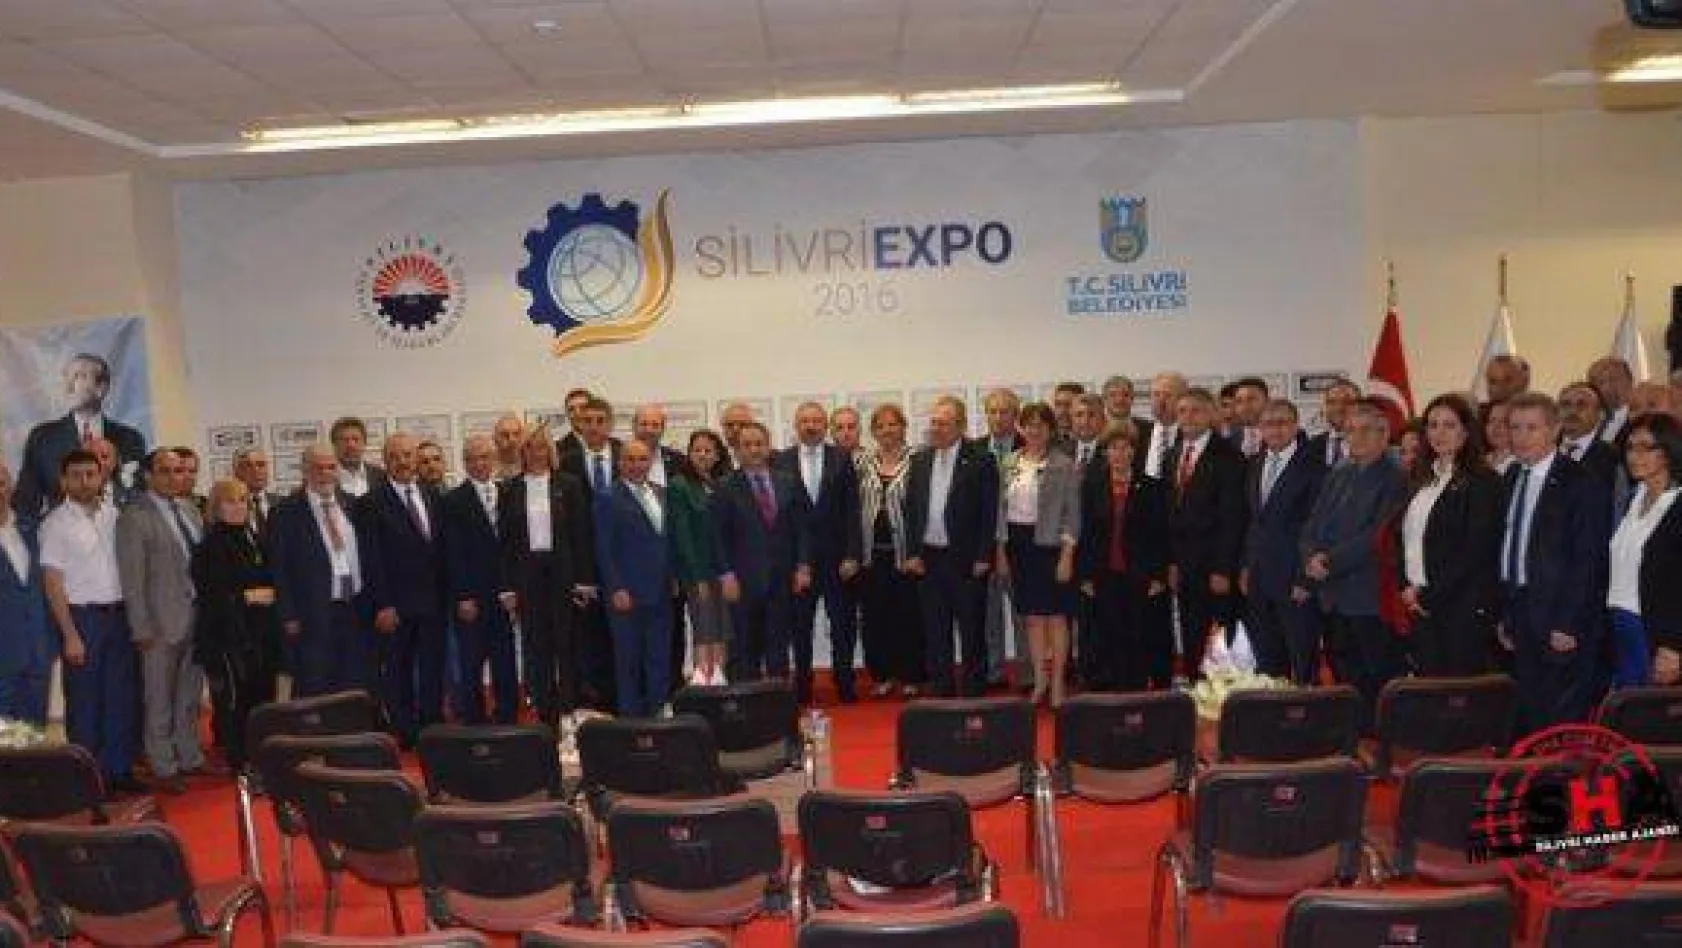 Silivri EXPO 2016 başladı!